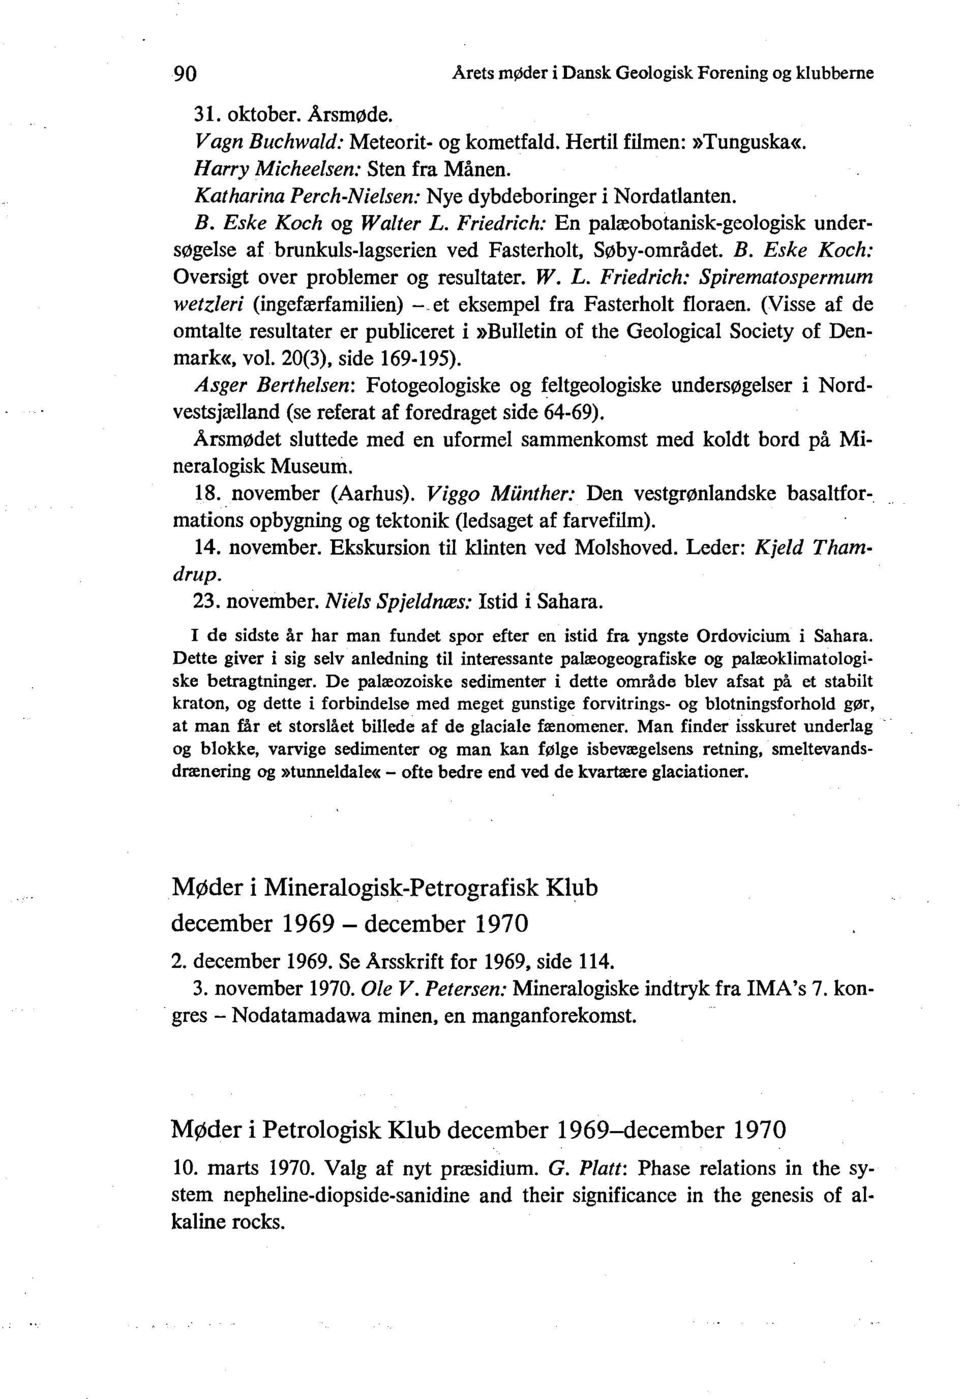 W. L. Friedrich: Spirematospermum wetzleri (ingefærfamilien) - et eksempel fra Fasterholt floraen. (Visse af de omtalte resultater er publiceret i»bulletin of the Geological Society of Denmark«, vol.